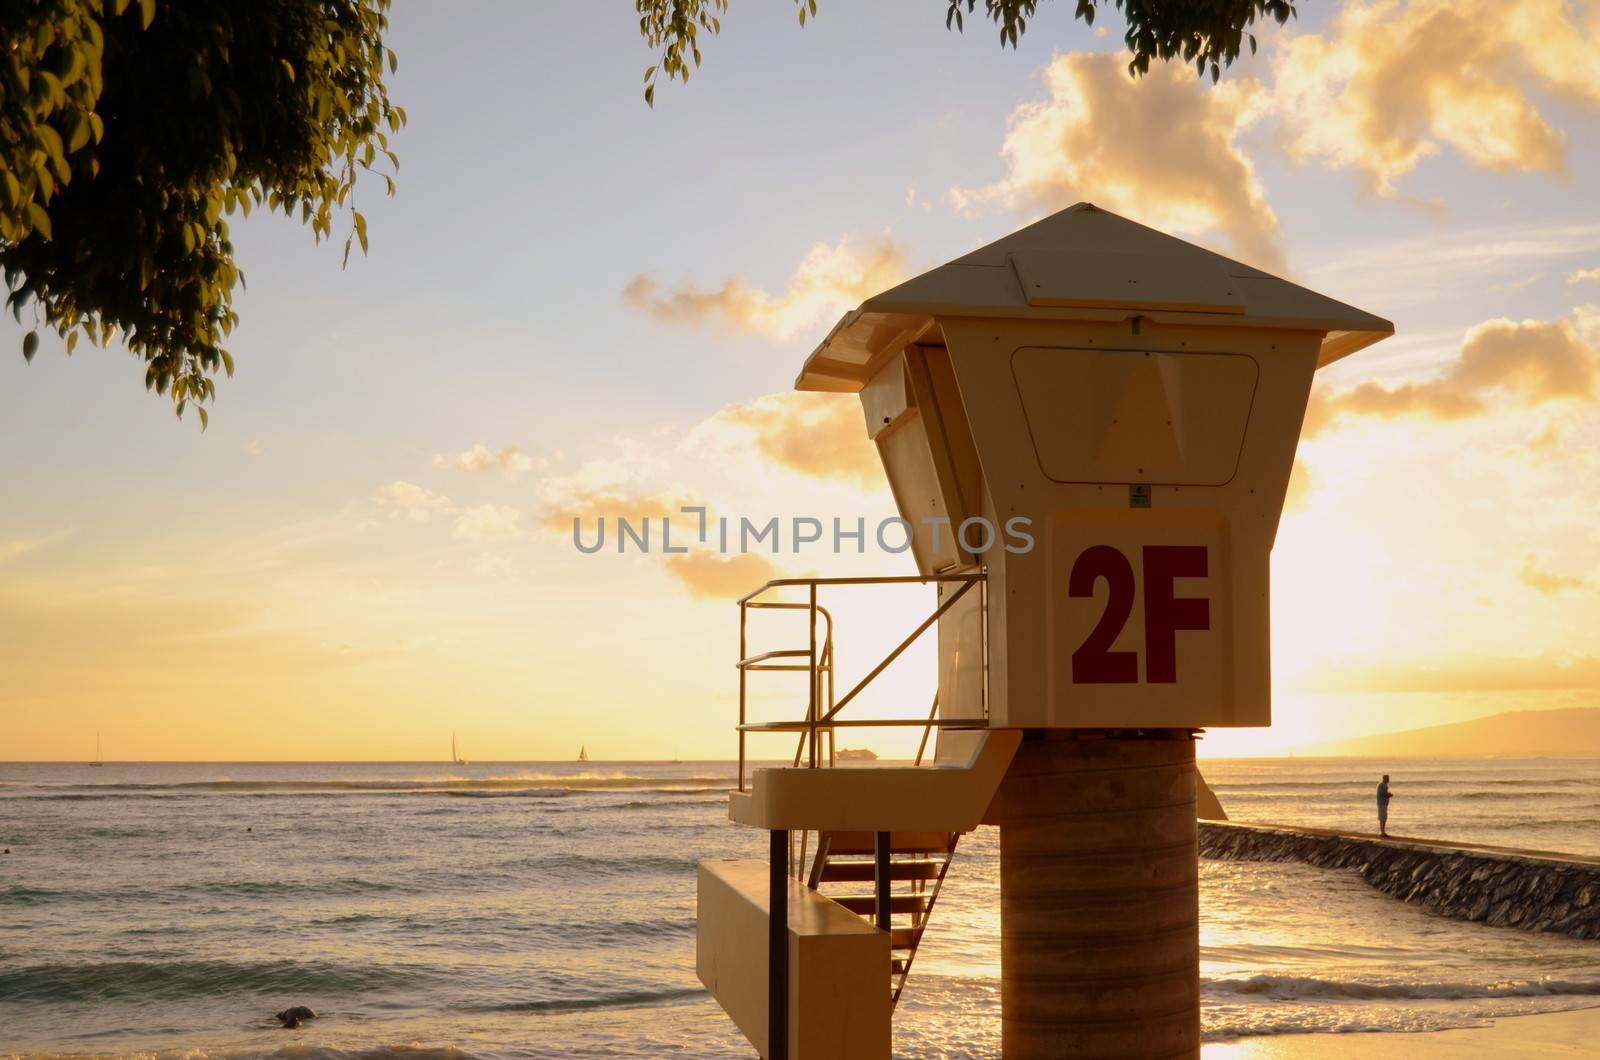 A Lifeguard Station On Waikiki Beach In Hawaii At Sunset